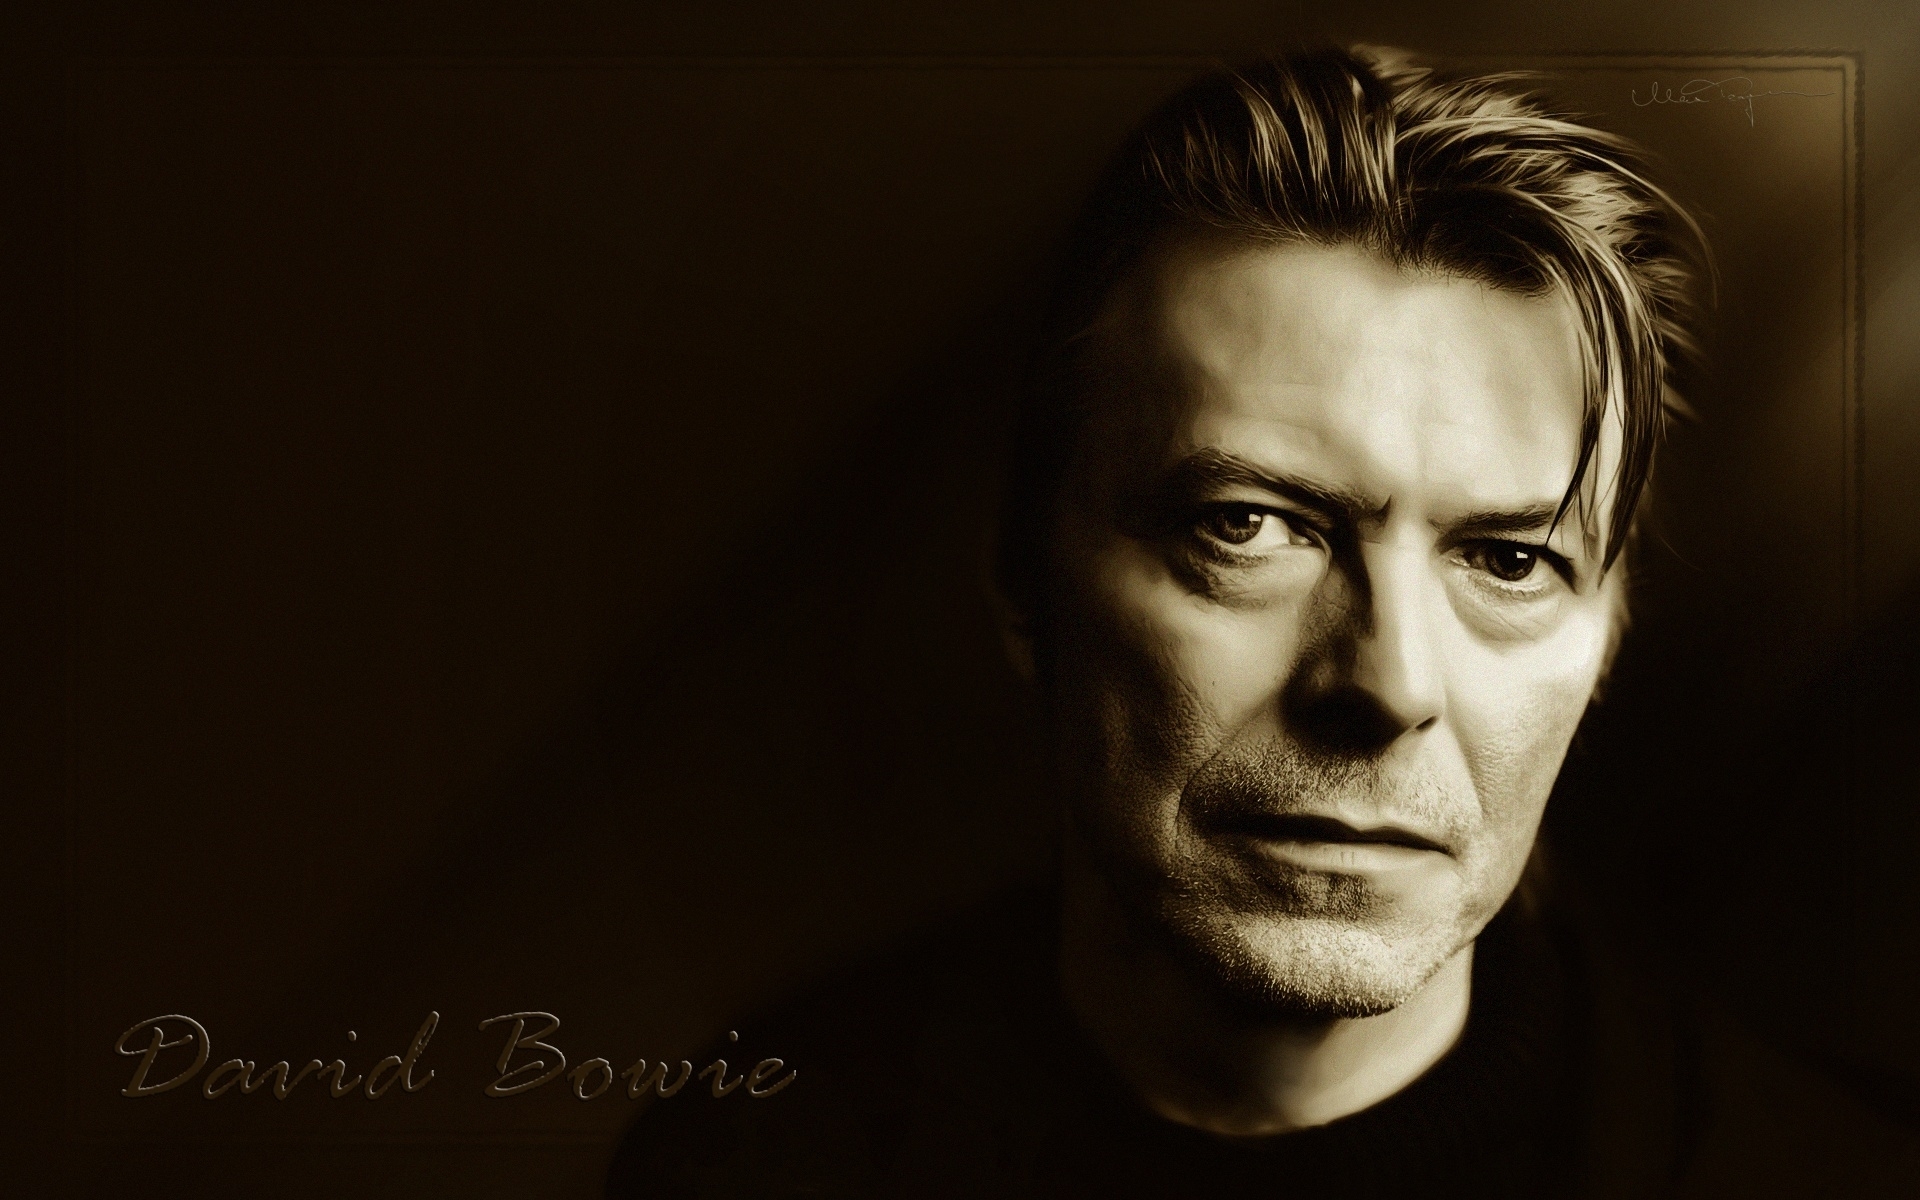 Melhores papéis de parede de David Bowie para tela do telefone